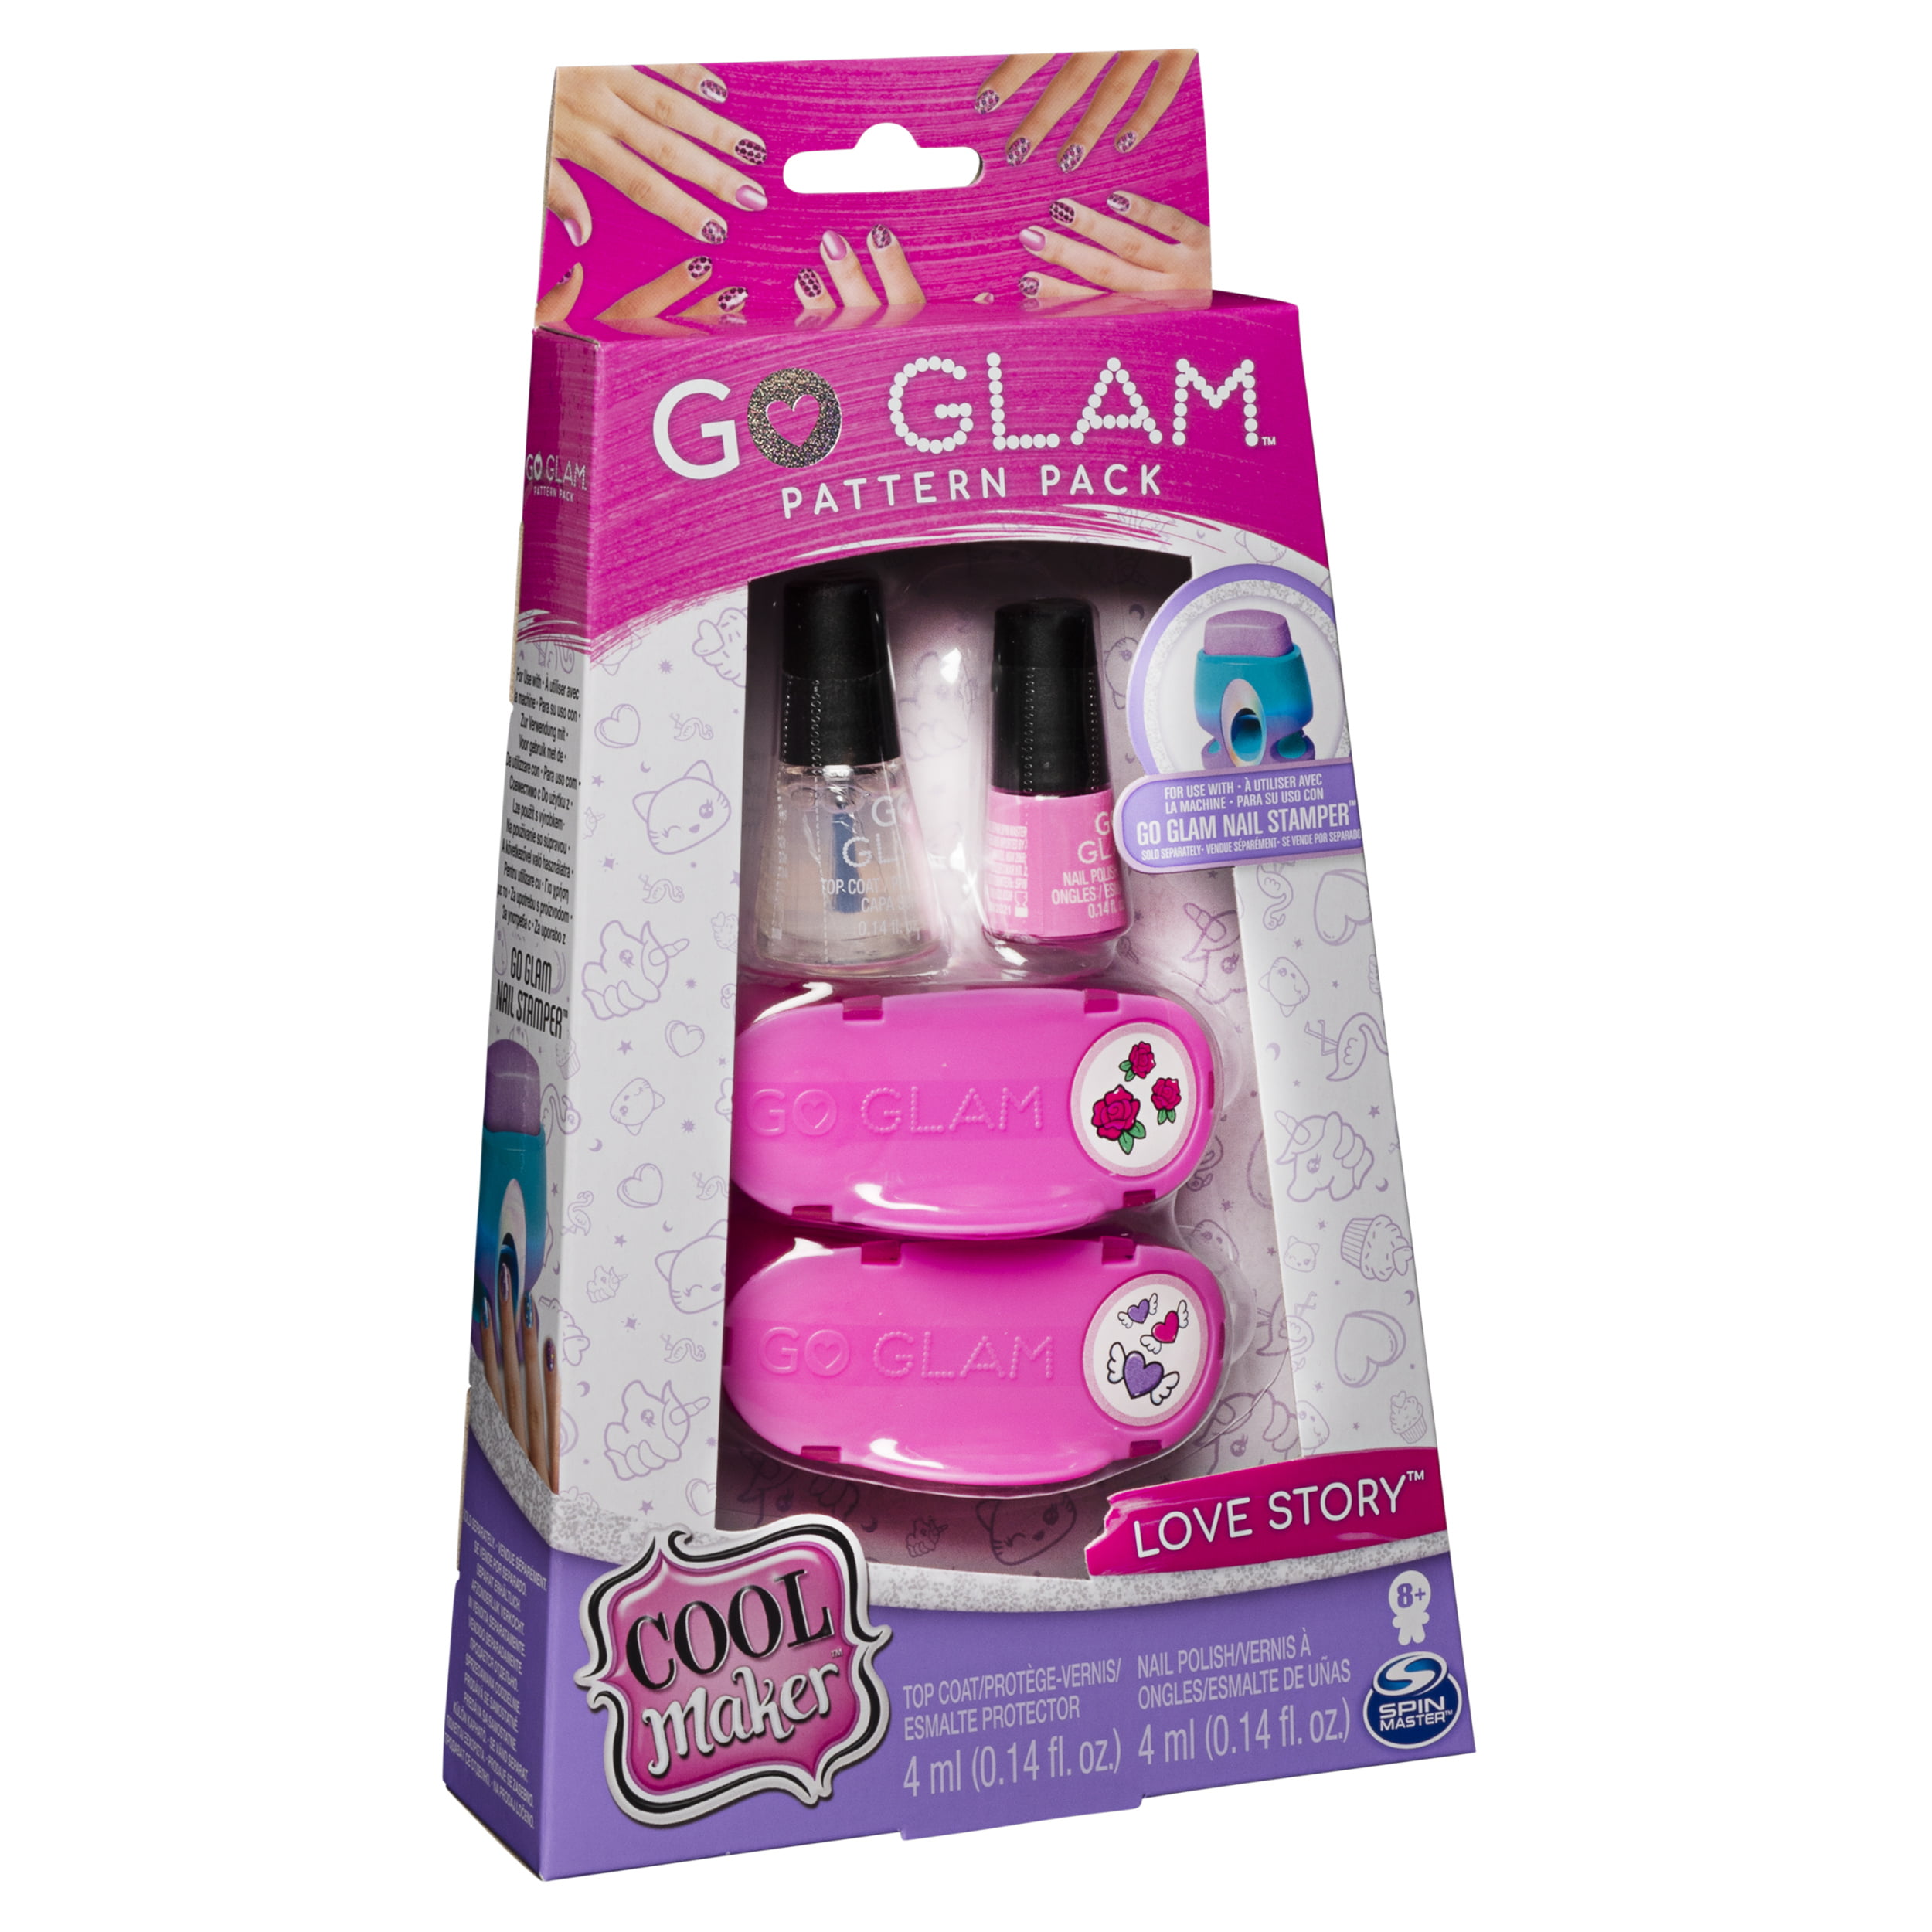 Go Glam Nail Stamper par Cool Maker